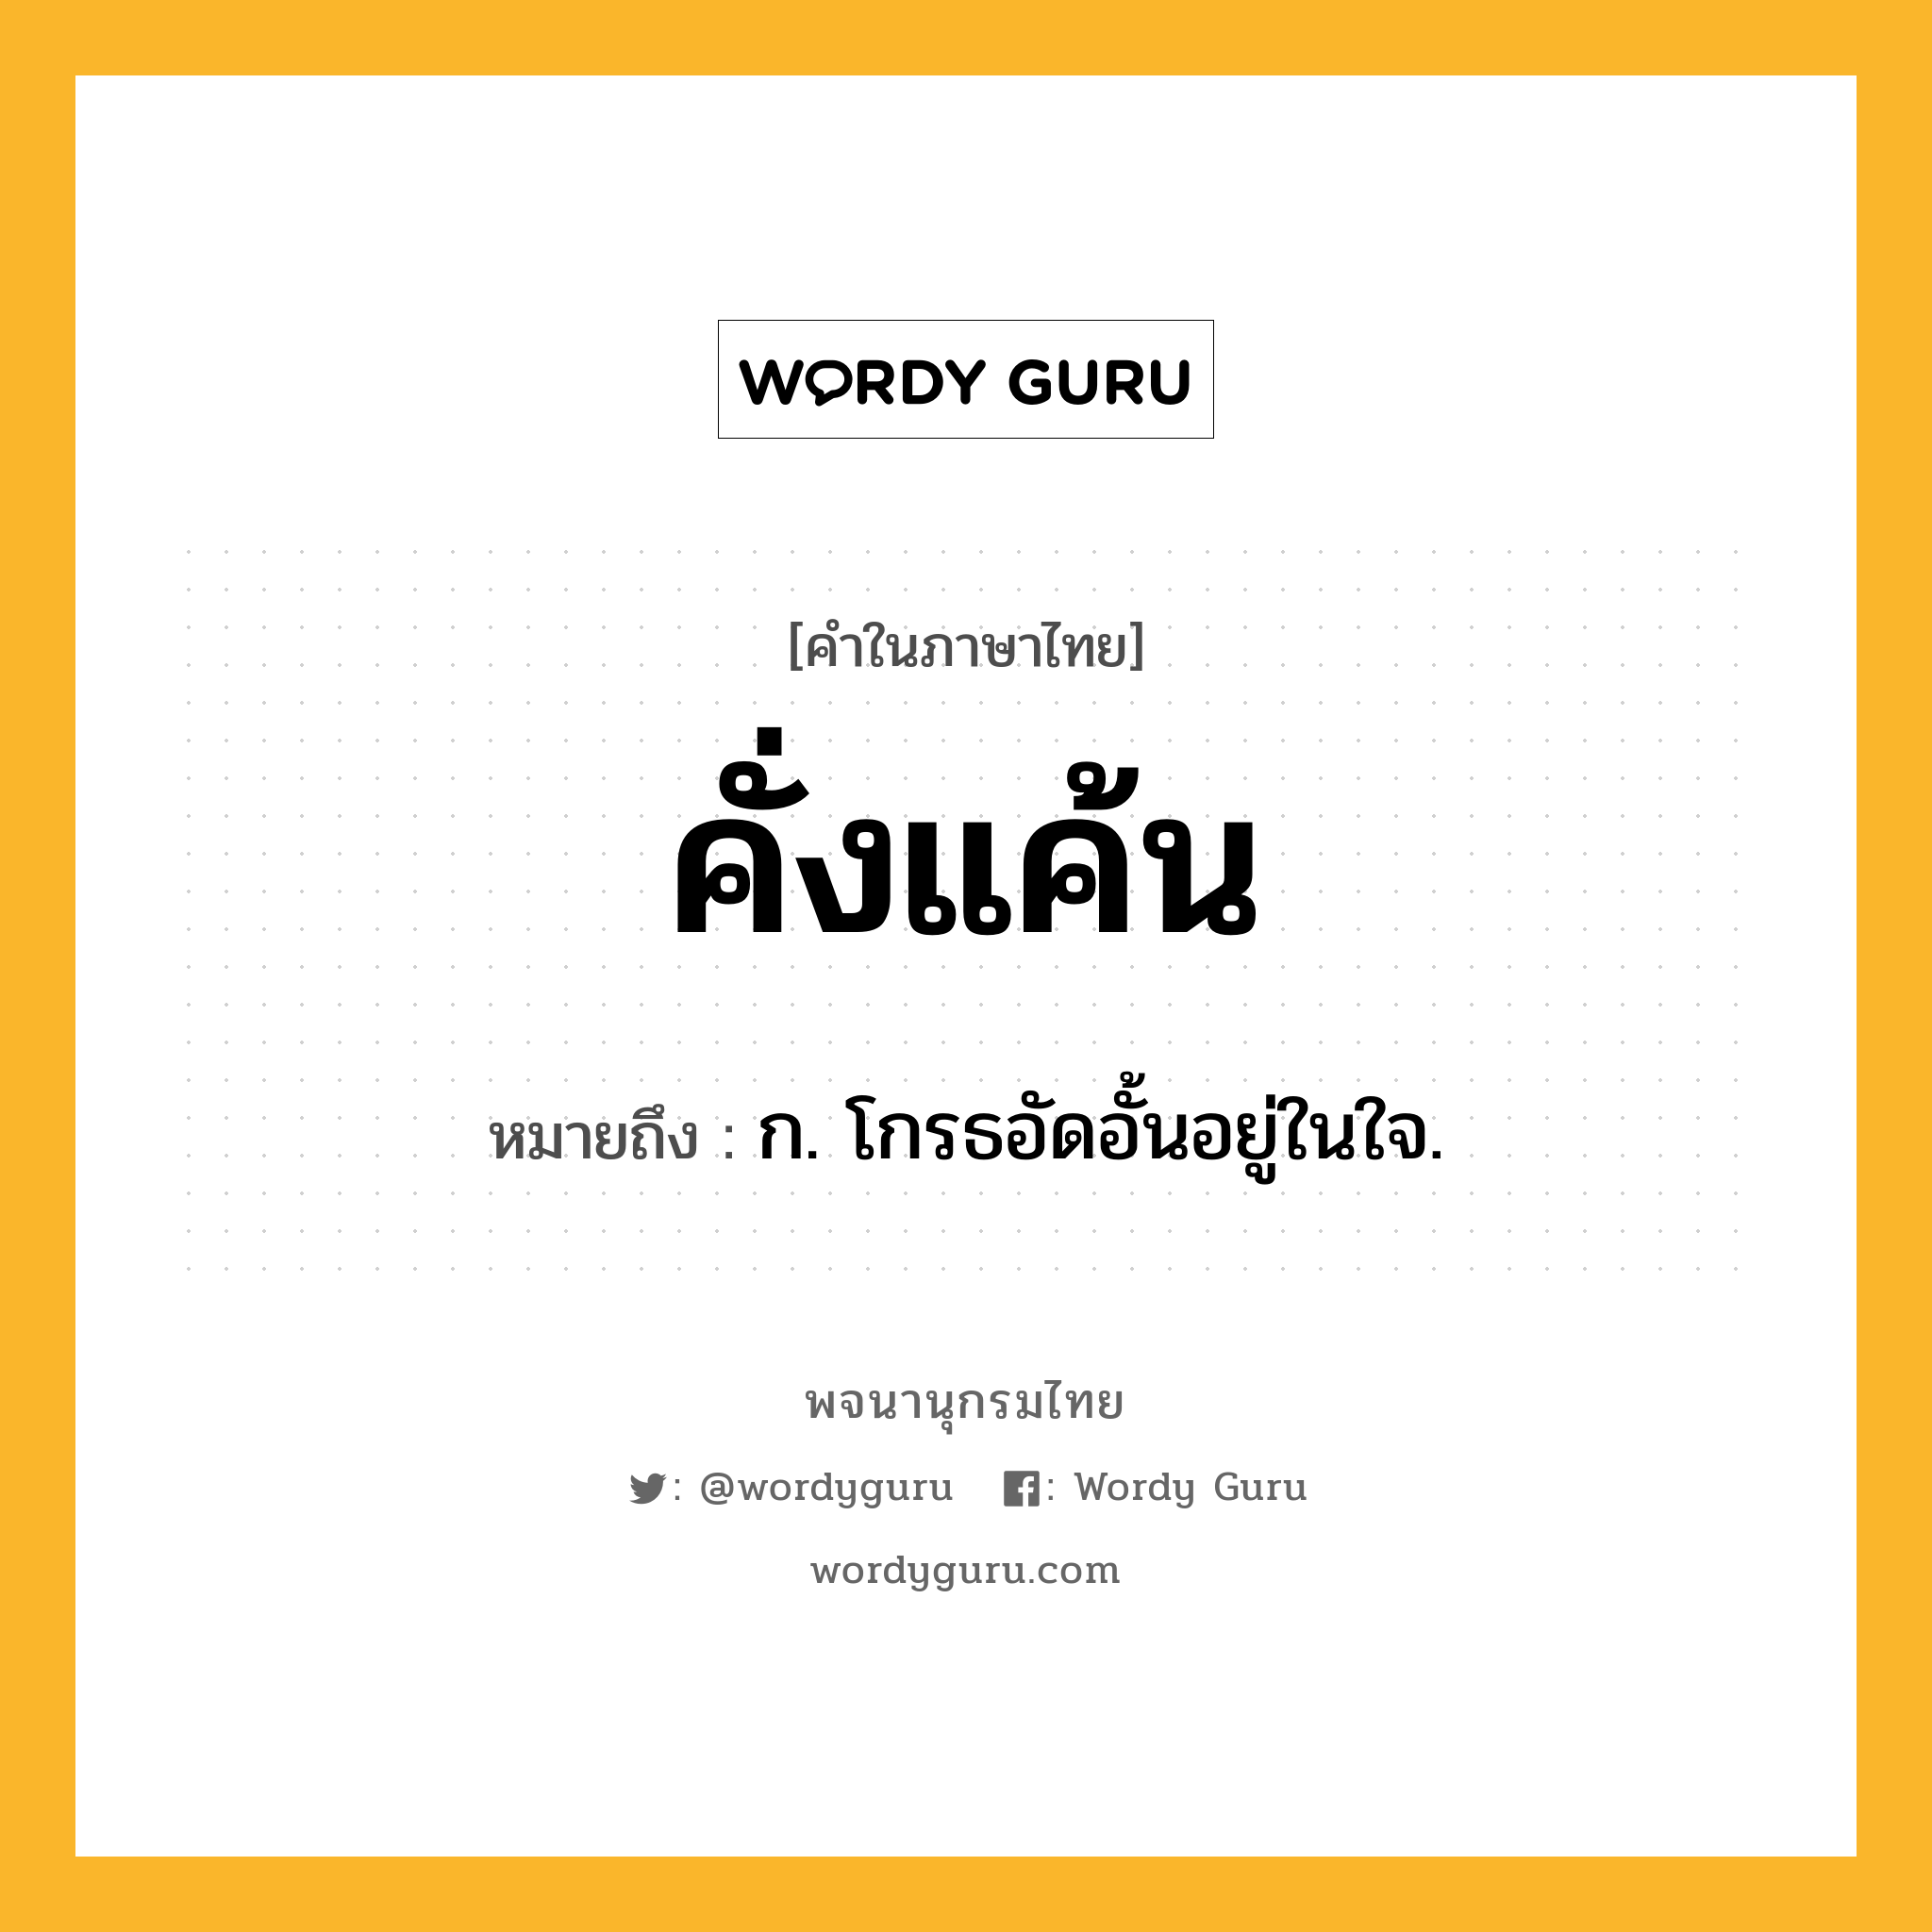 คั่งแค้น หมายถึงอะไร?, คำในภาษาไทย คั่งแค้น หมายถึง ก. โกรธอัดอั้นอยู่ในใจ.